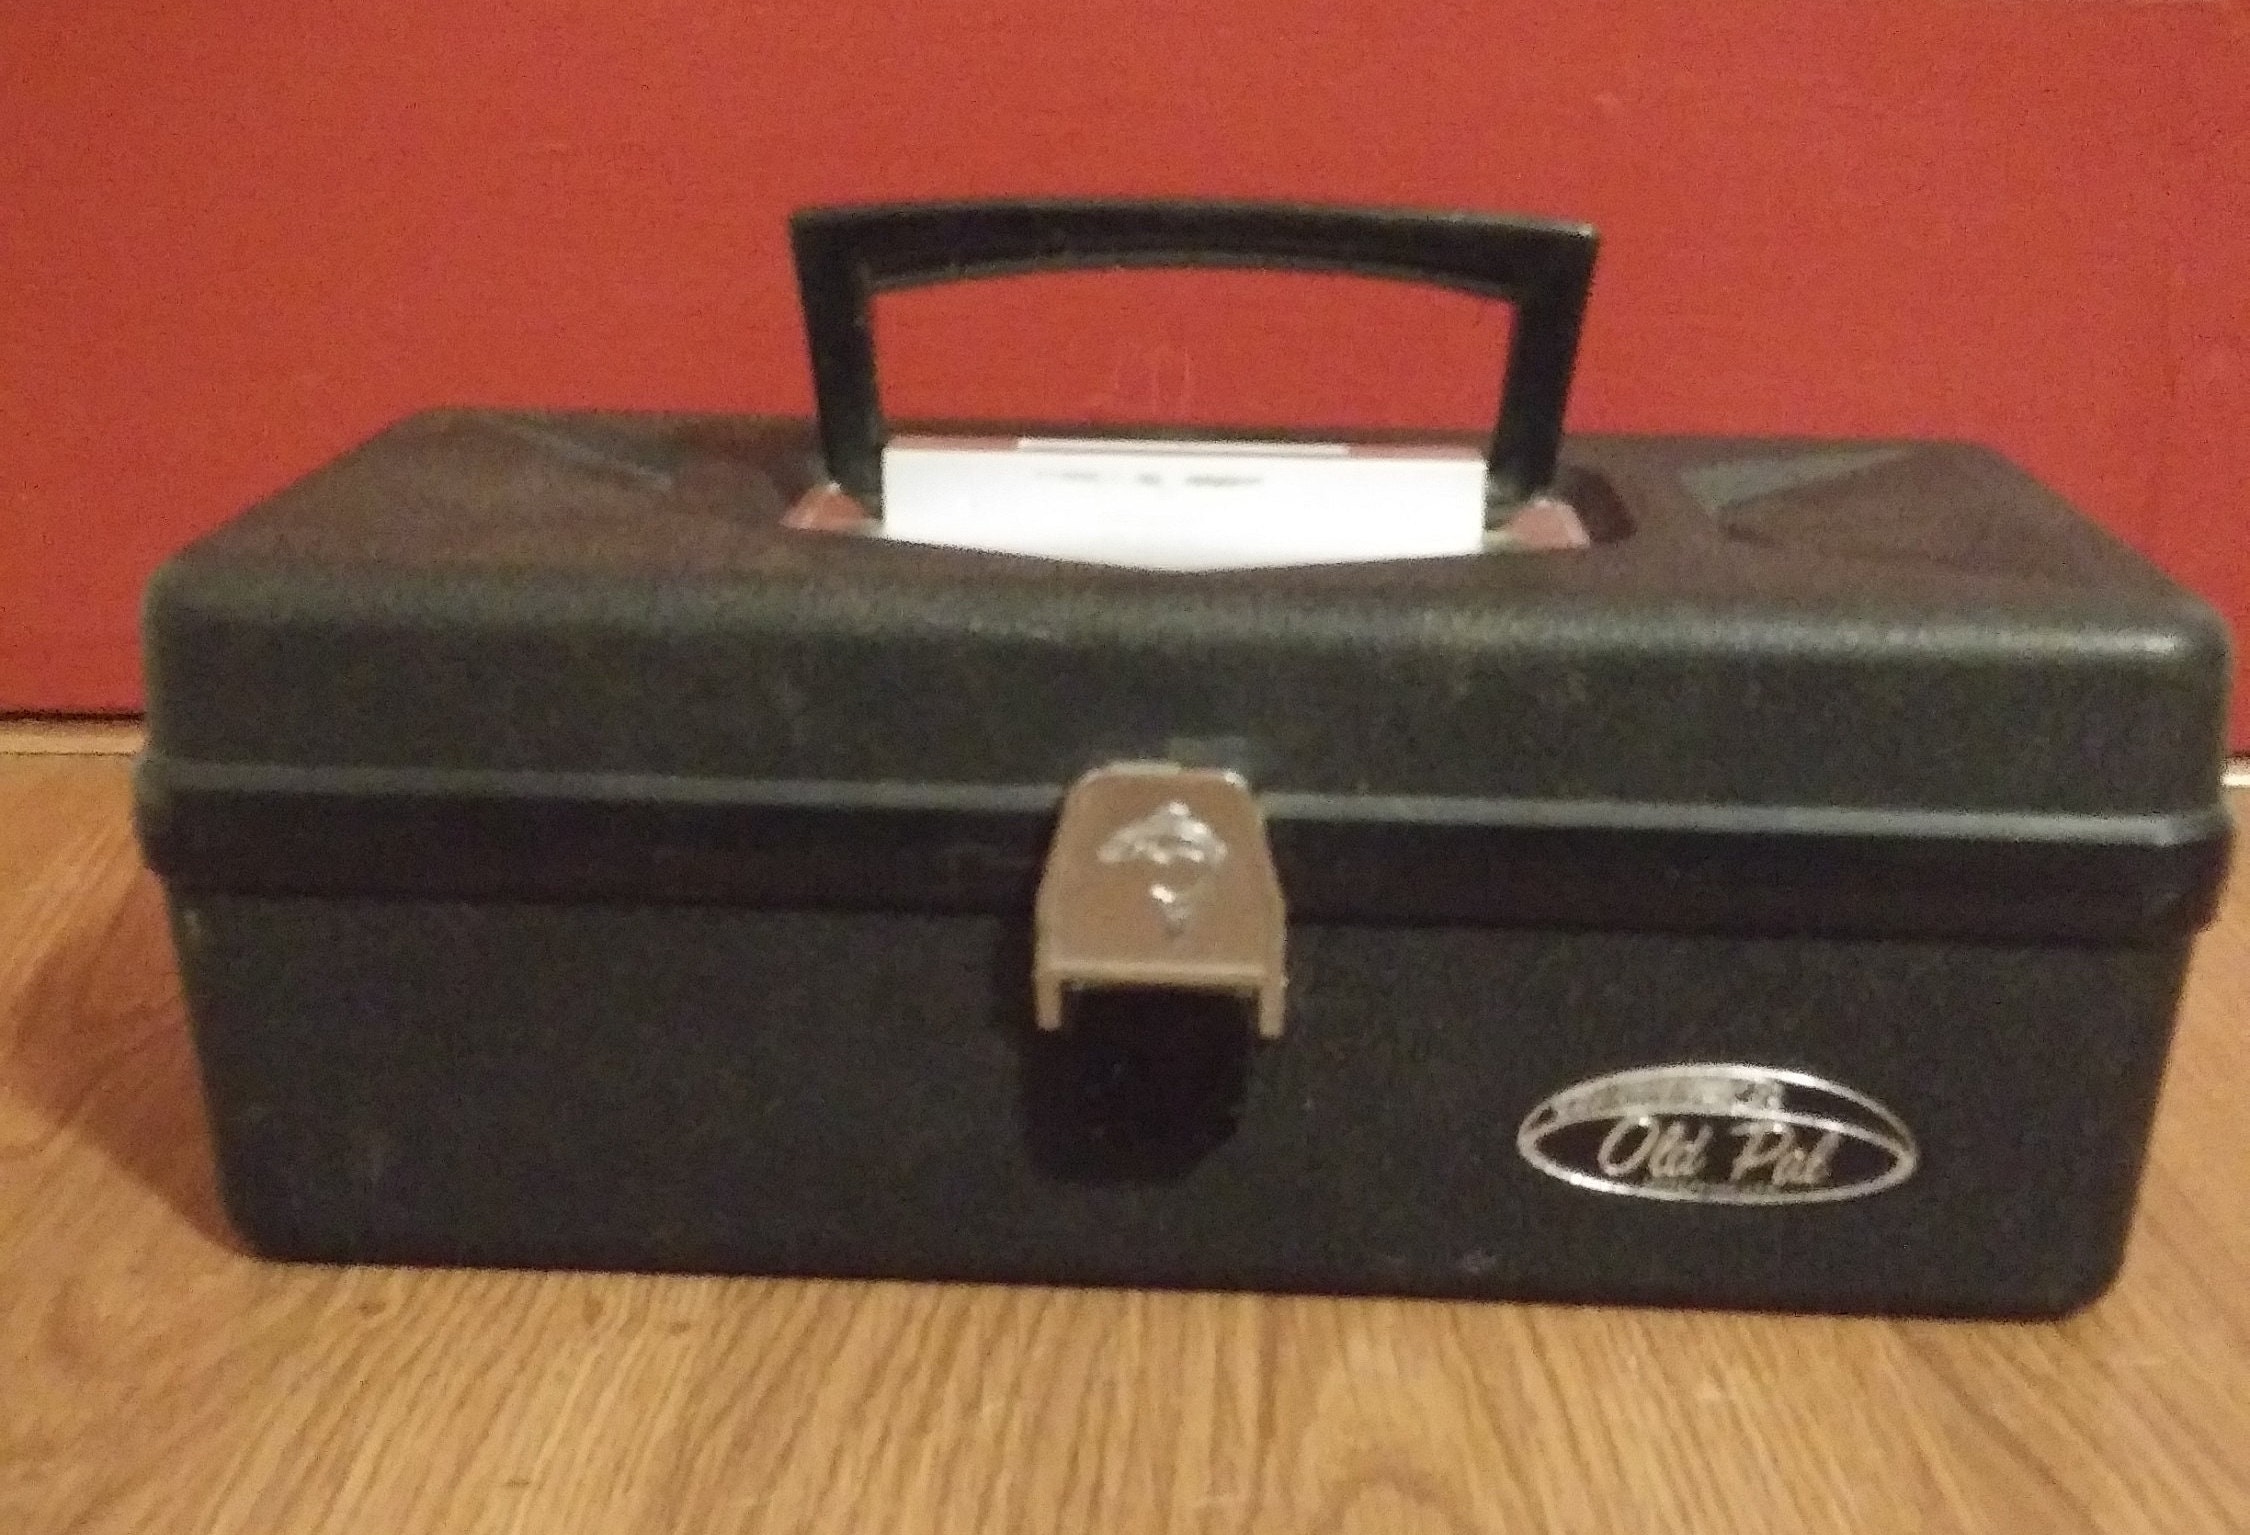 Old Pal Tackle Box Circa 1960's -  Canada